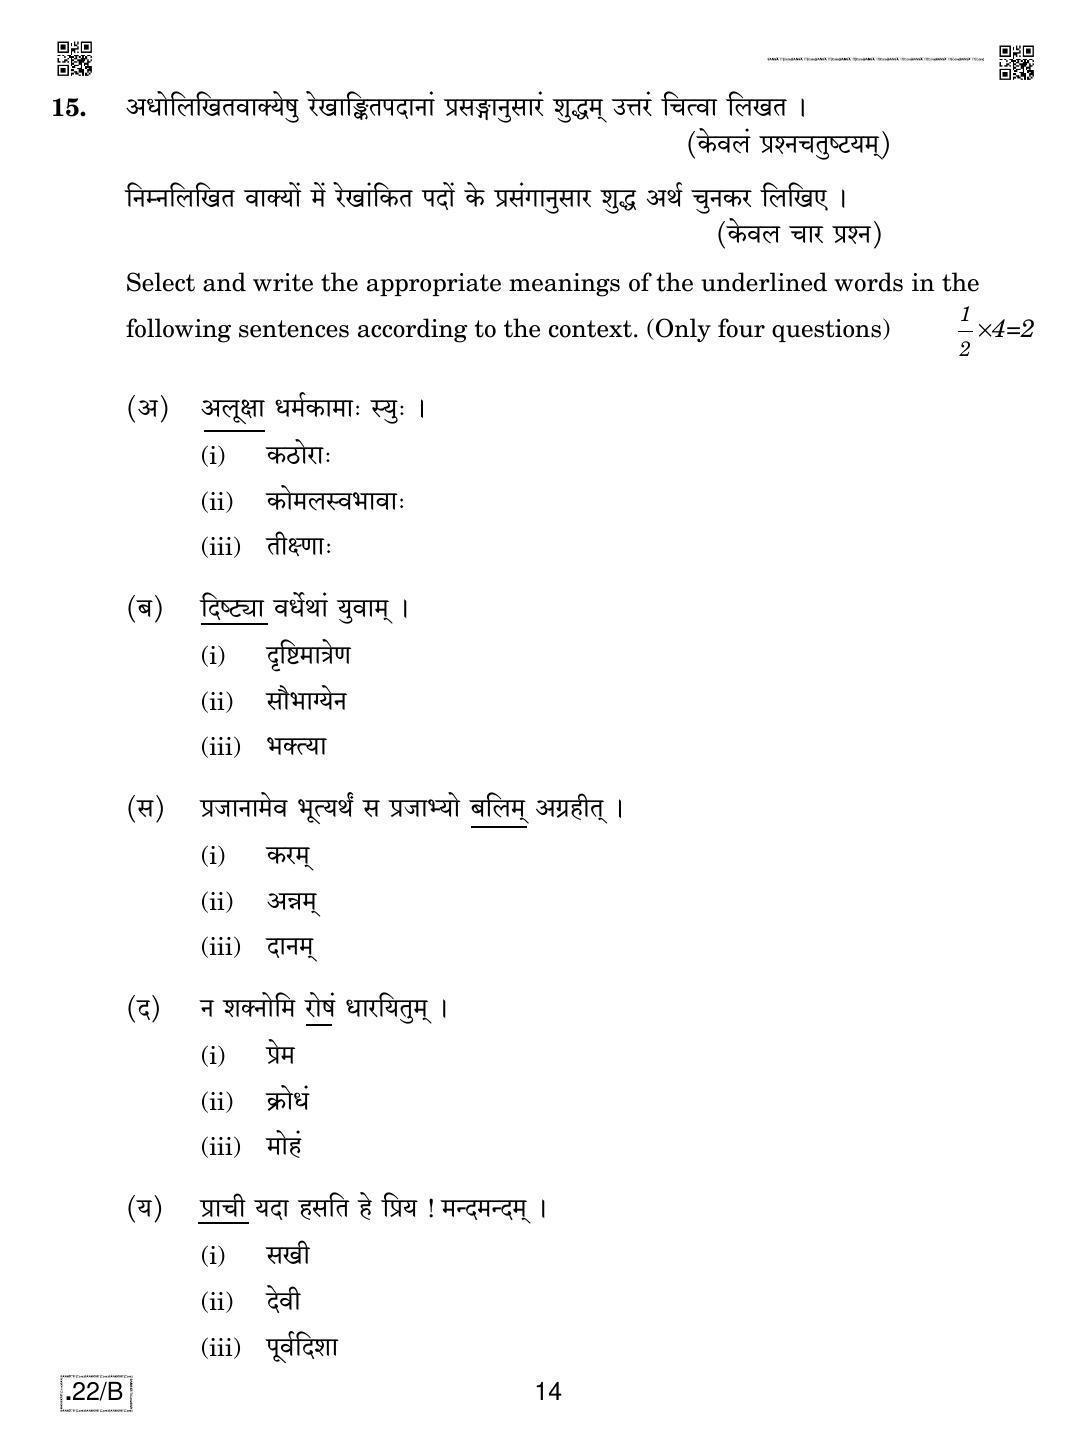 CBSE Class 12 Sanskrit Core 2020 Compartment Question Paper - Page 14